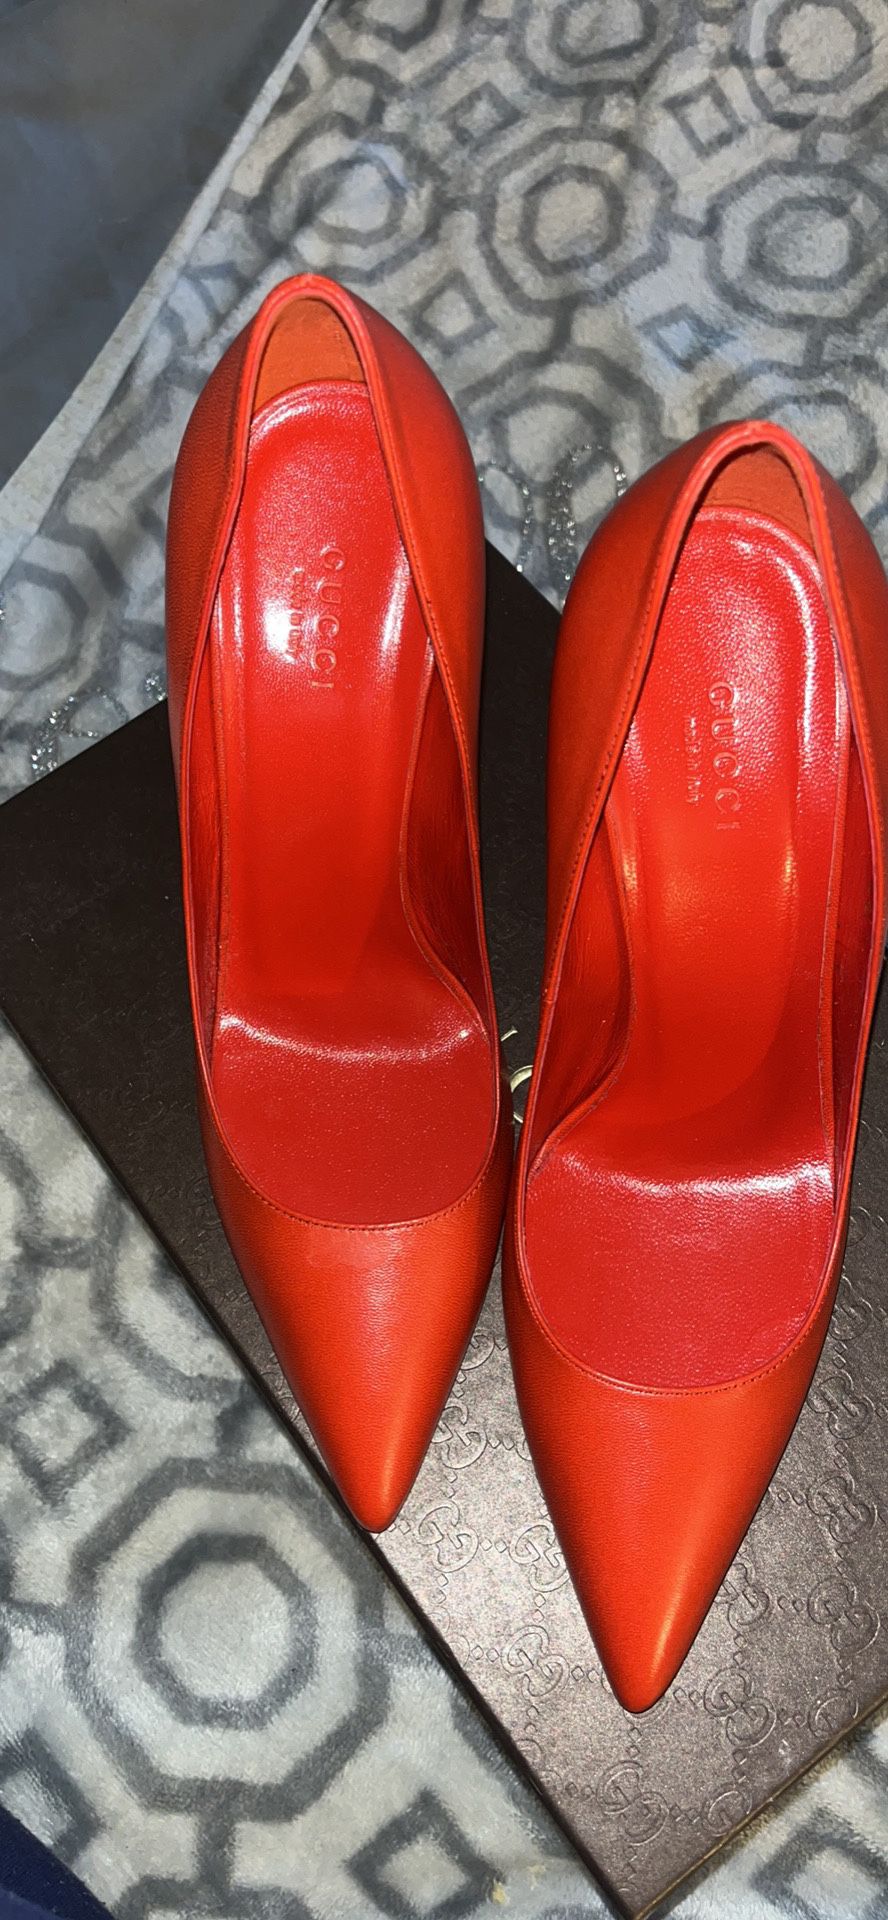 Red Heels 